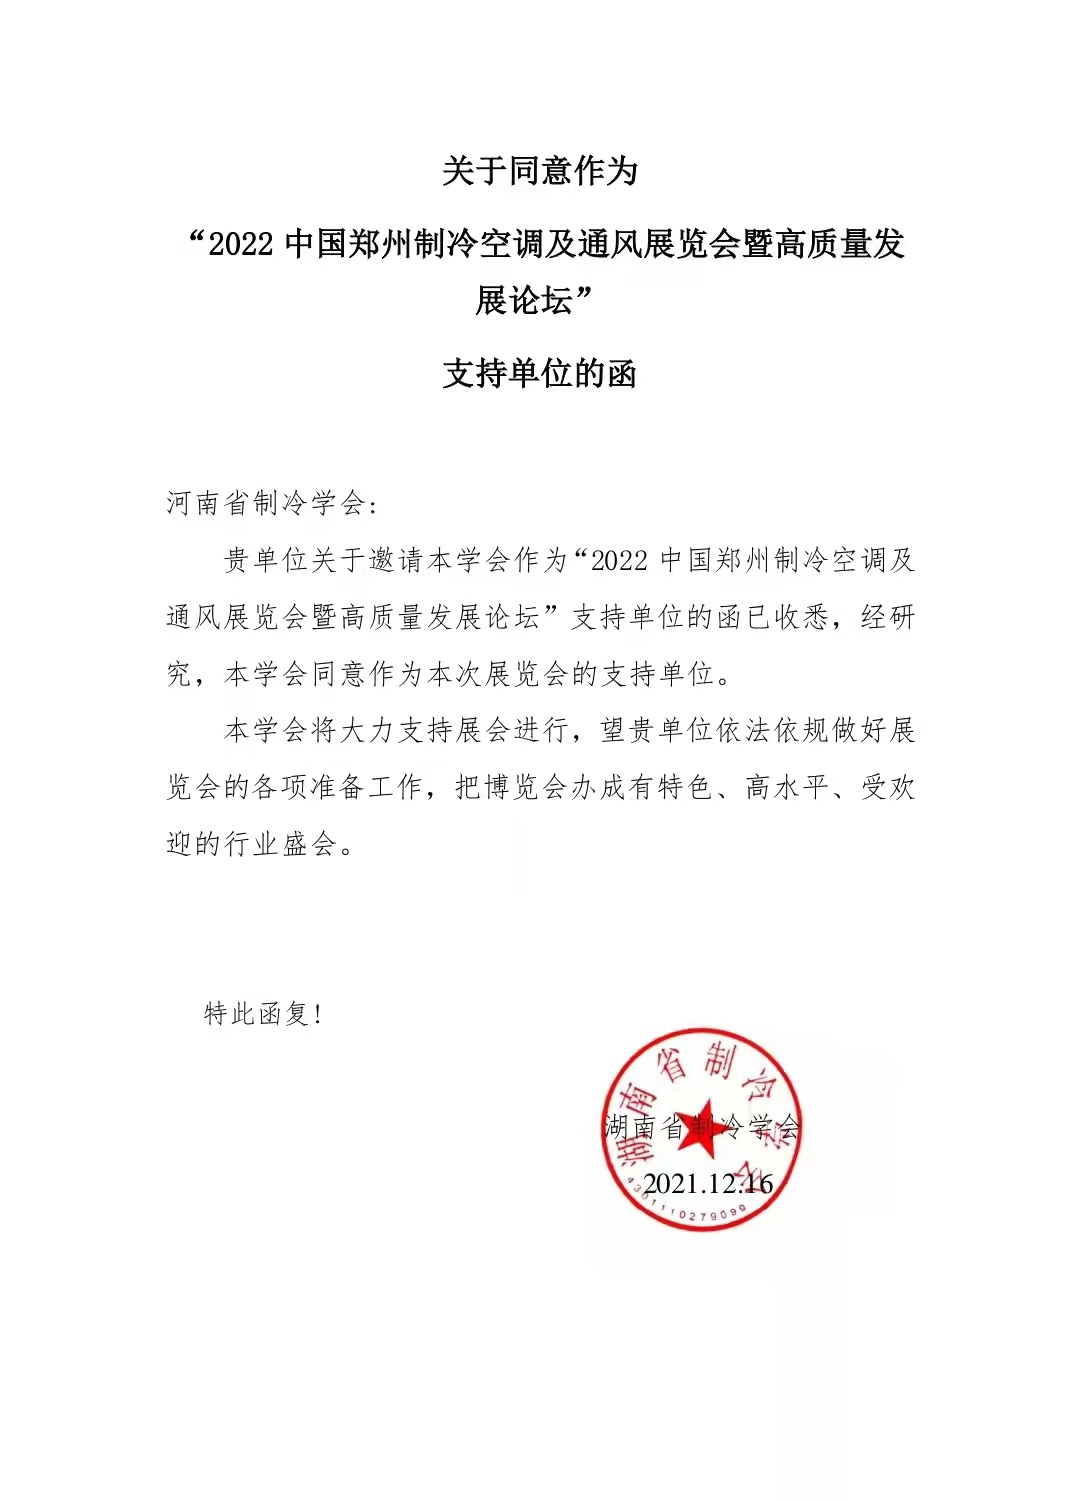 感谢湖南省制冷学会对2022郑州制冷展的大力支持